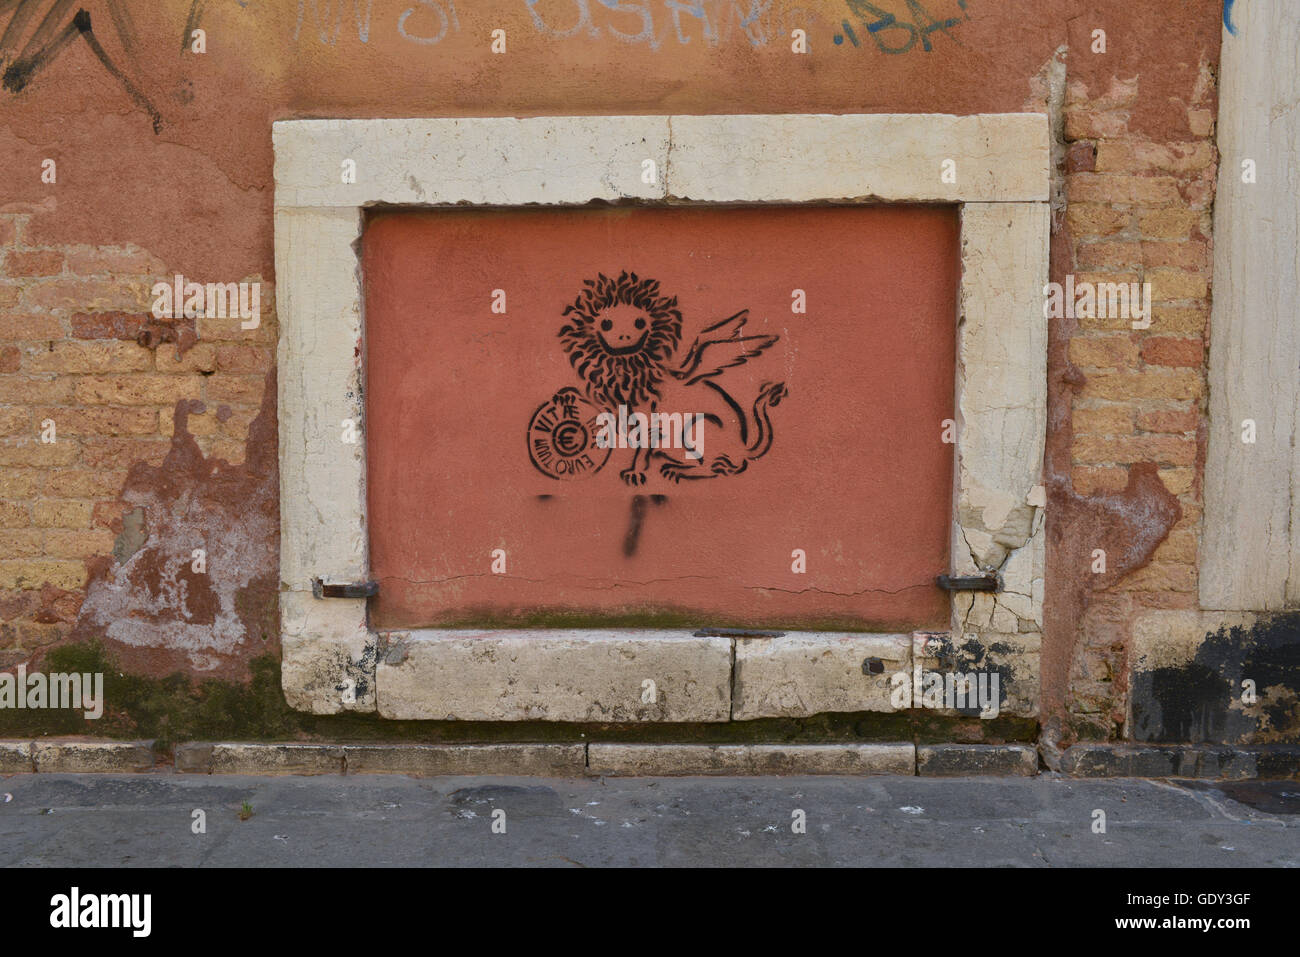 Vernice spray graffiti di leone su una parete a Venezia, Italia Foto Stock